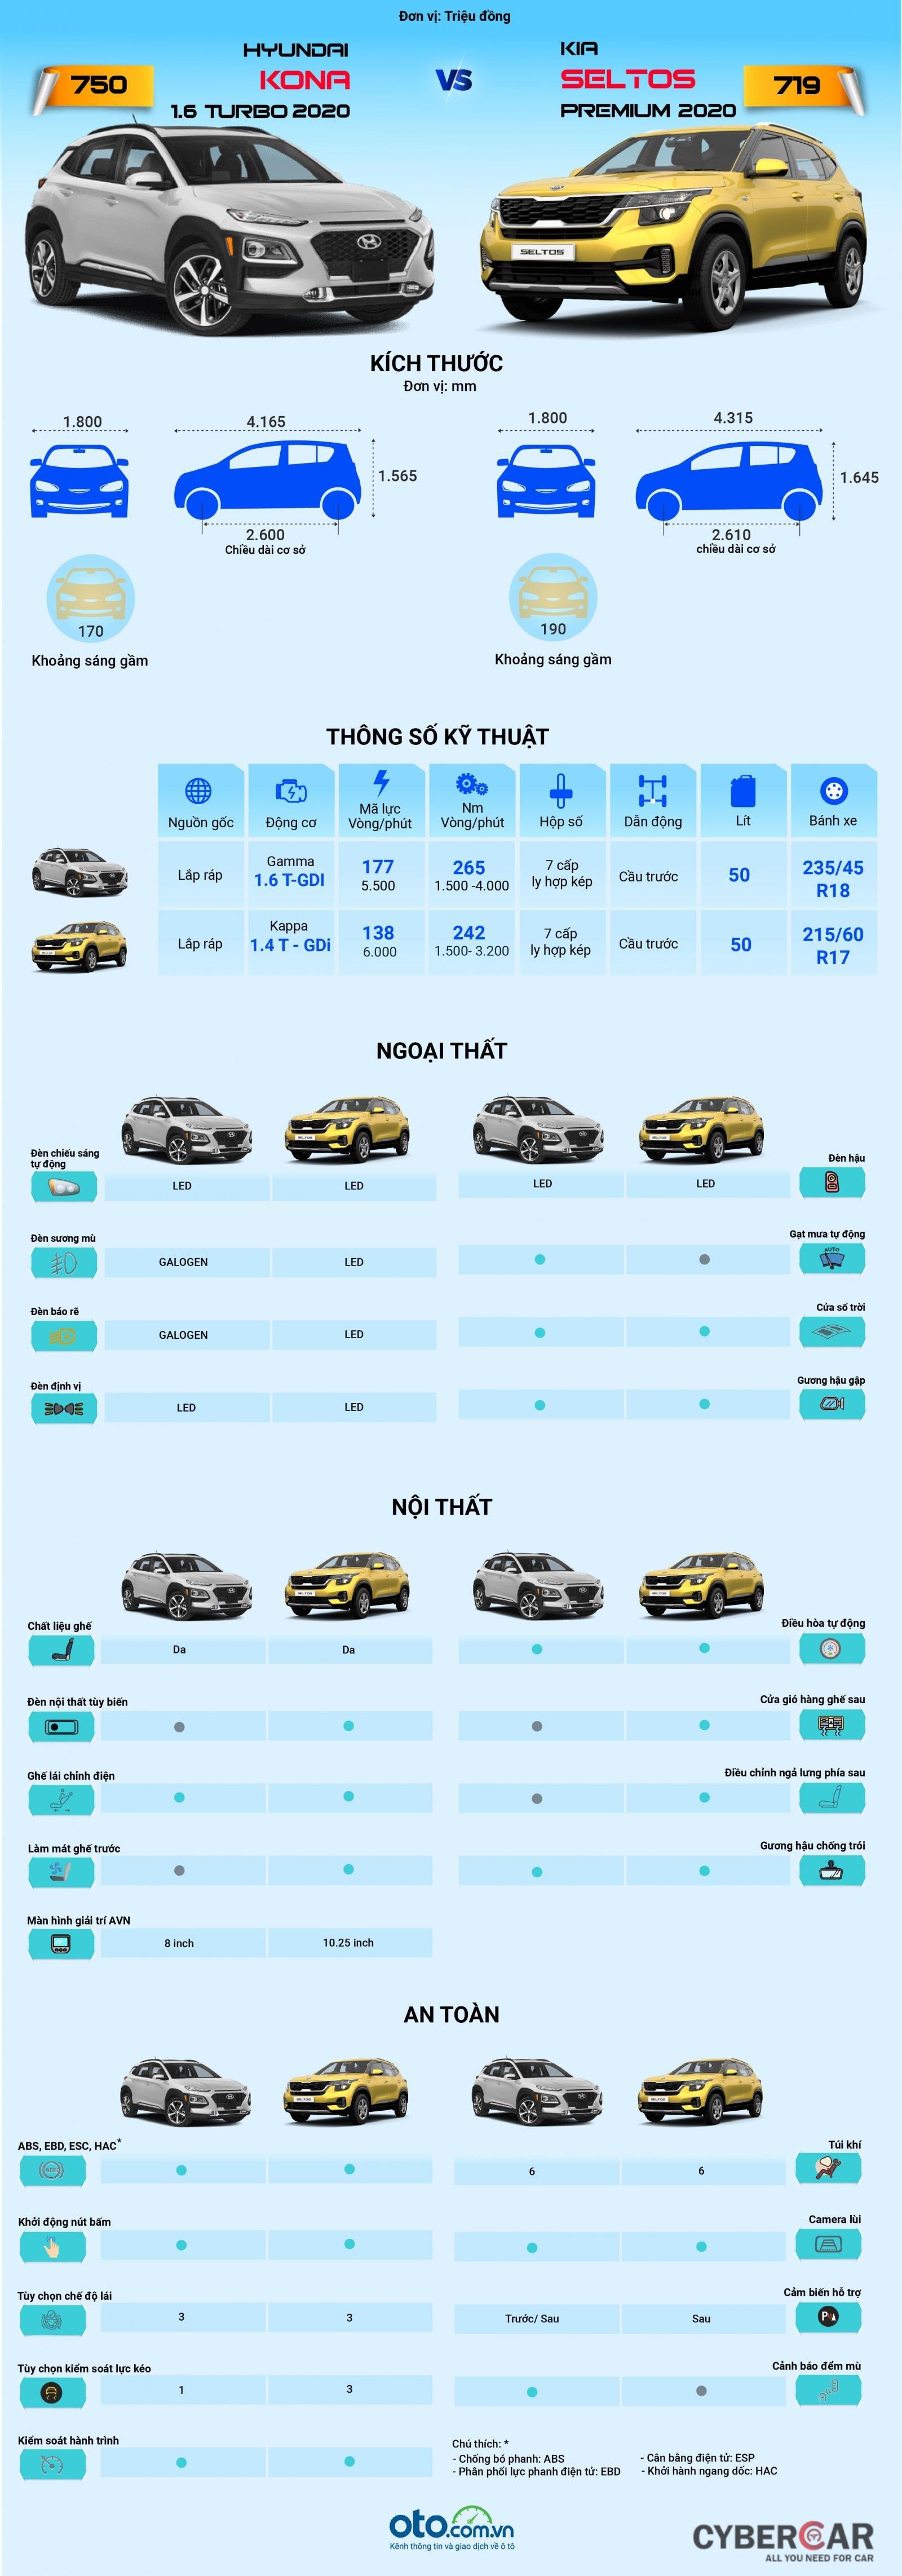 So sánh chênh lệch trang bị giữa Hyundai Kona và Kia Seltos 2020.